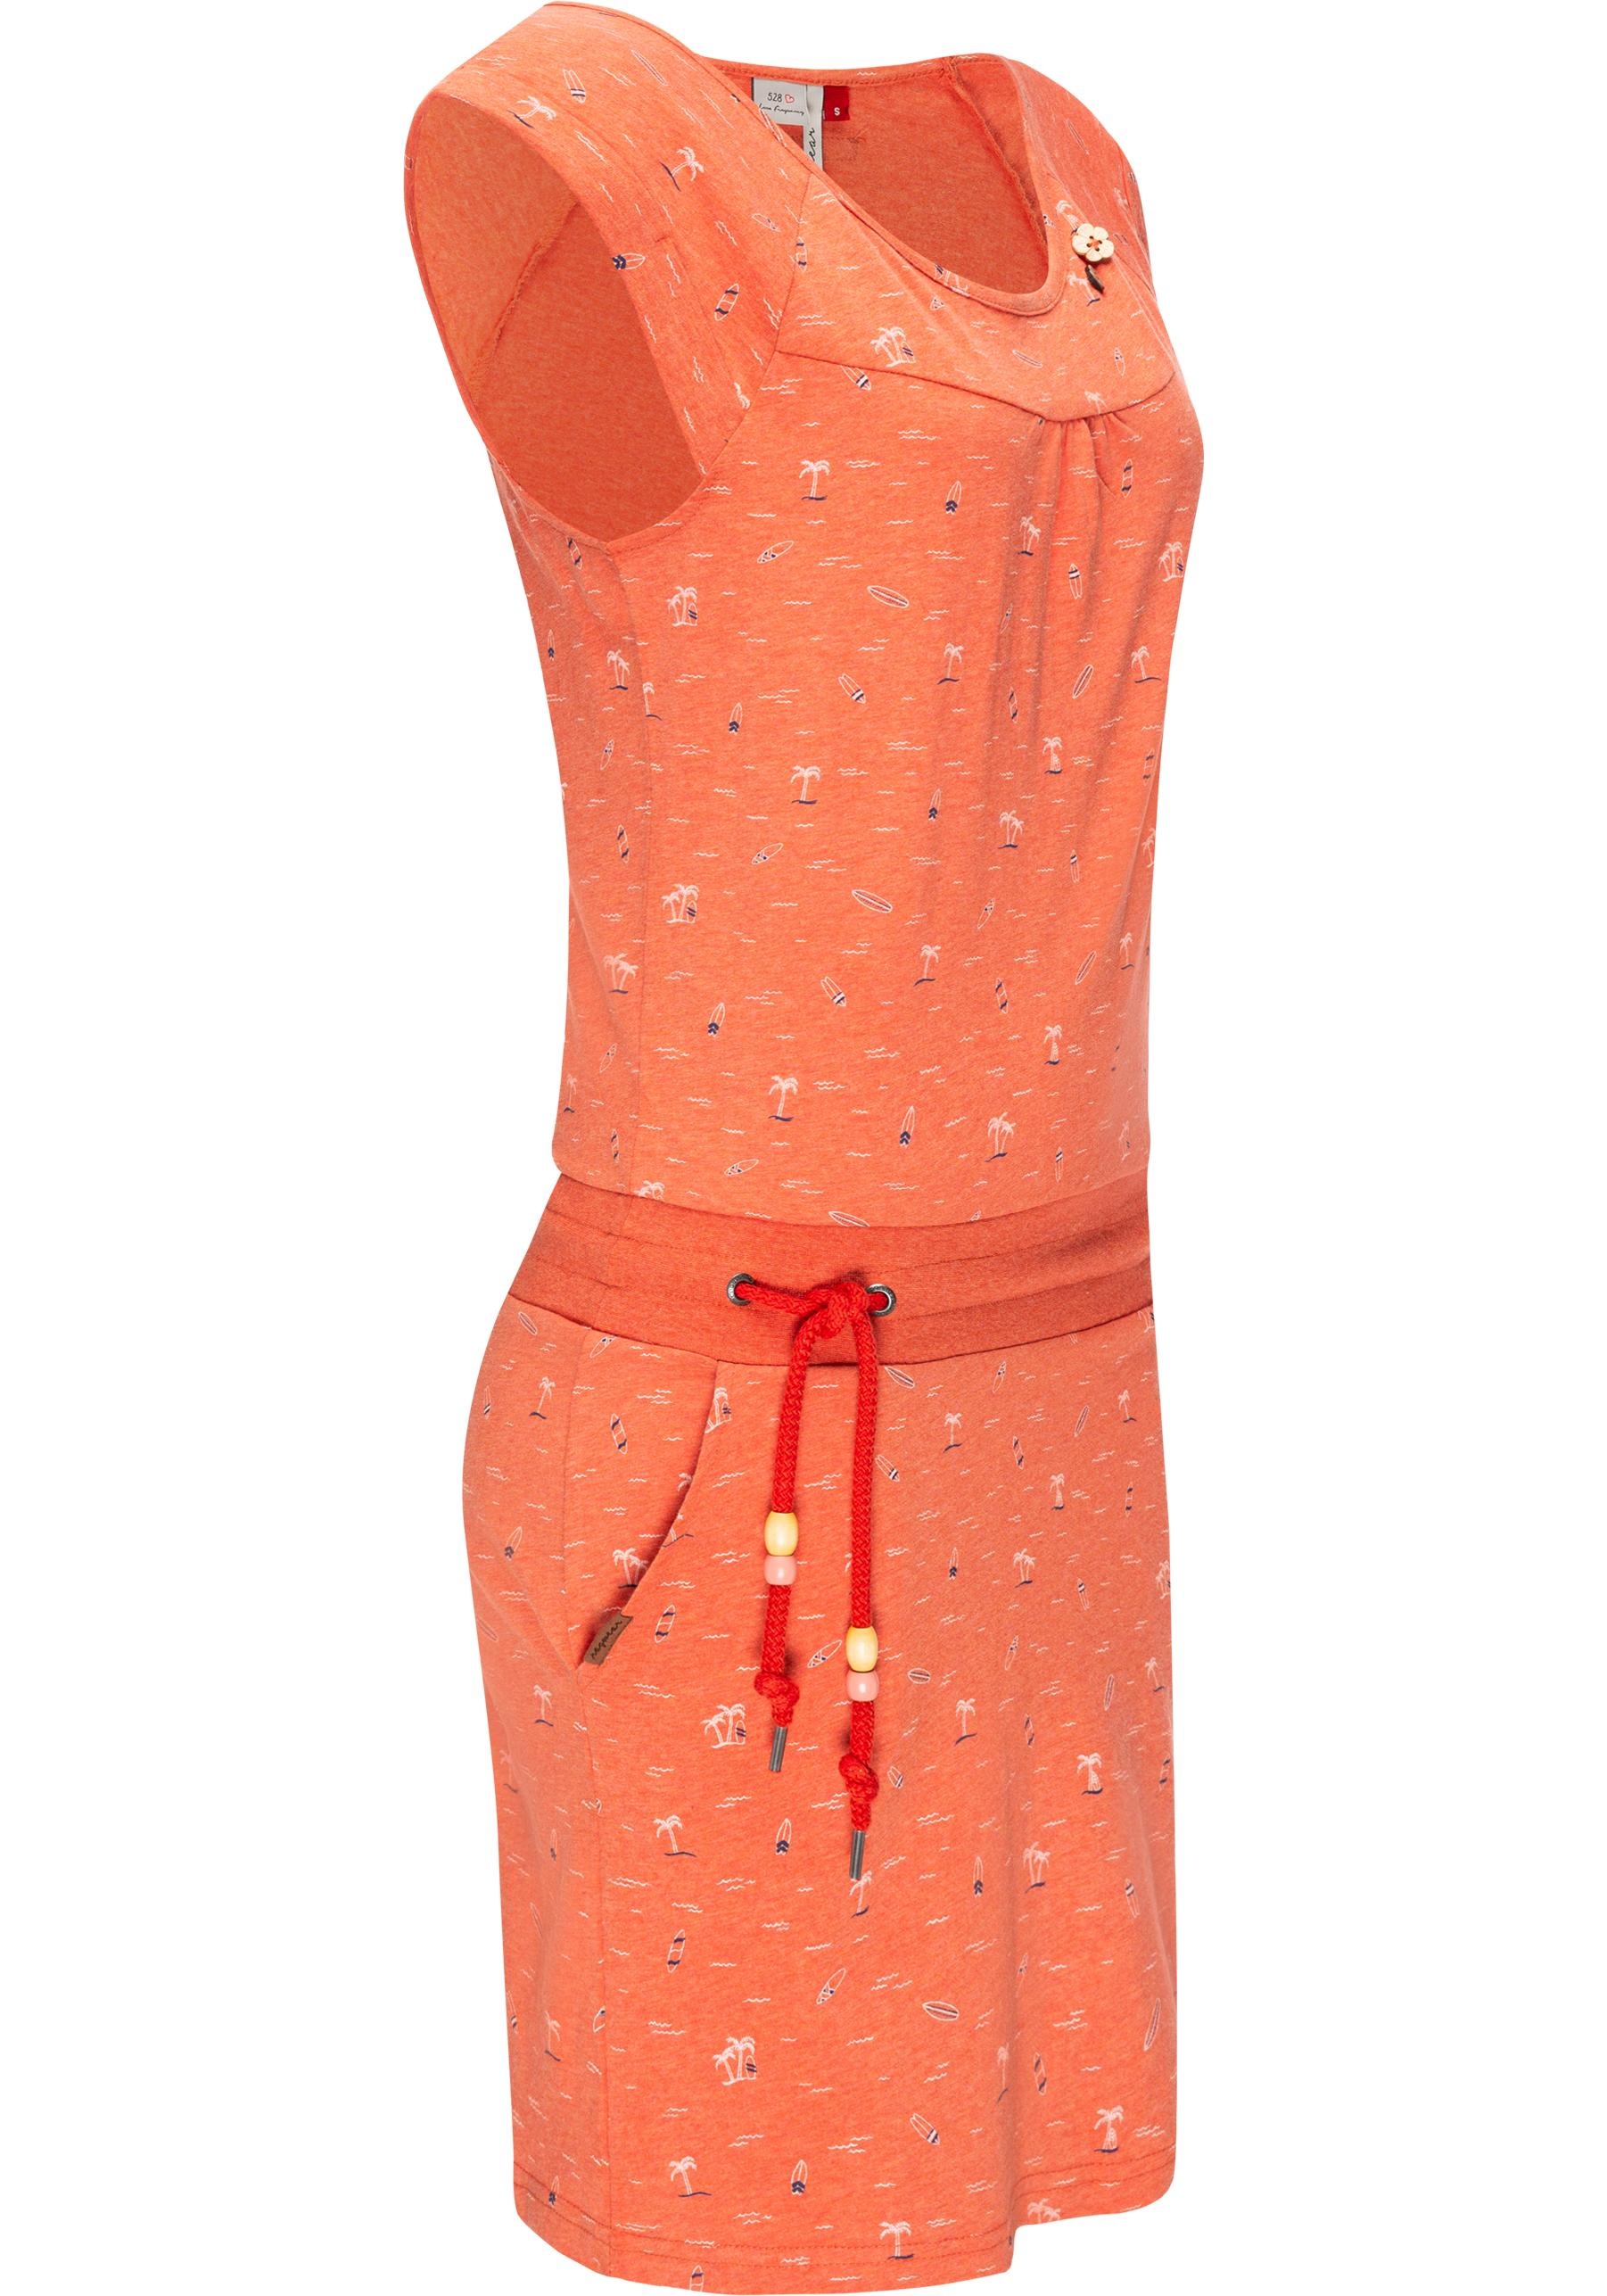 Ragwear Sommerkleid »Penelope«, leichtes Baumwoll Kleid mit Print